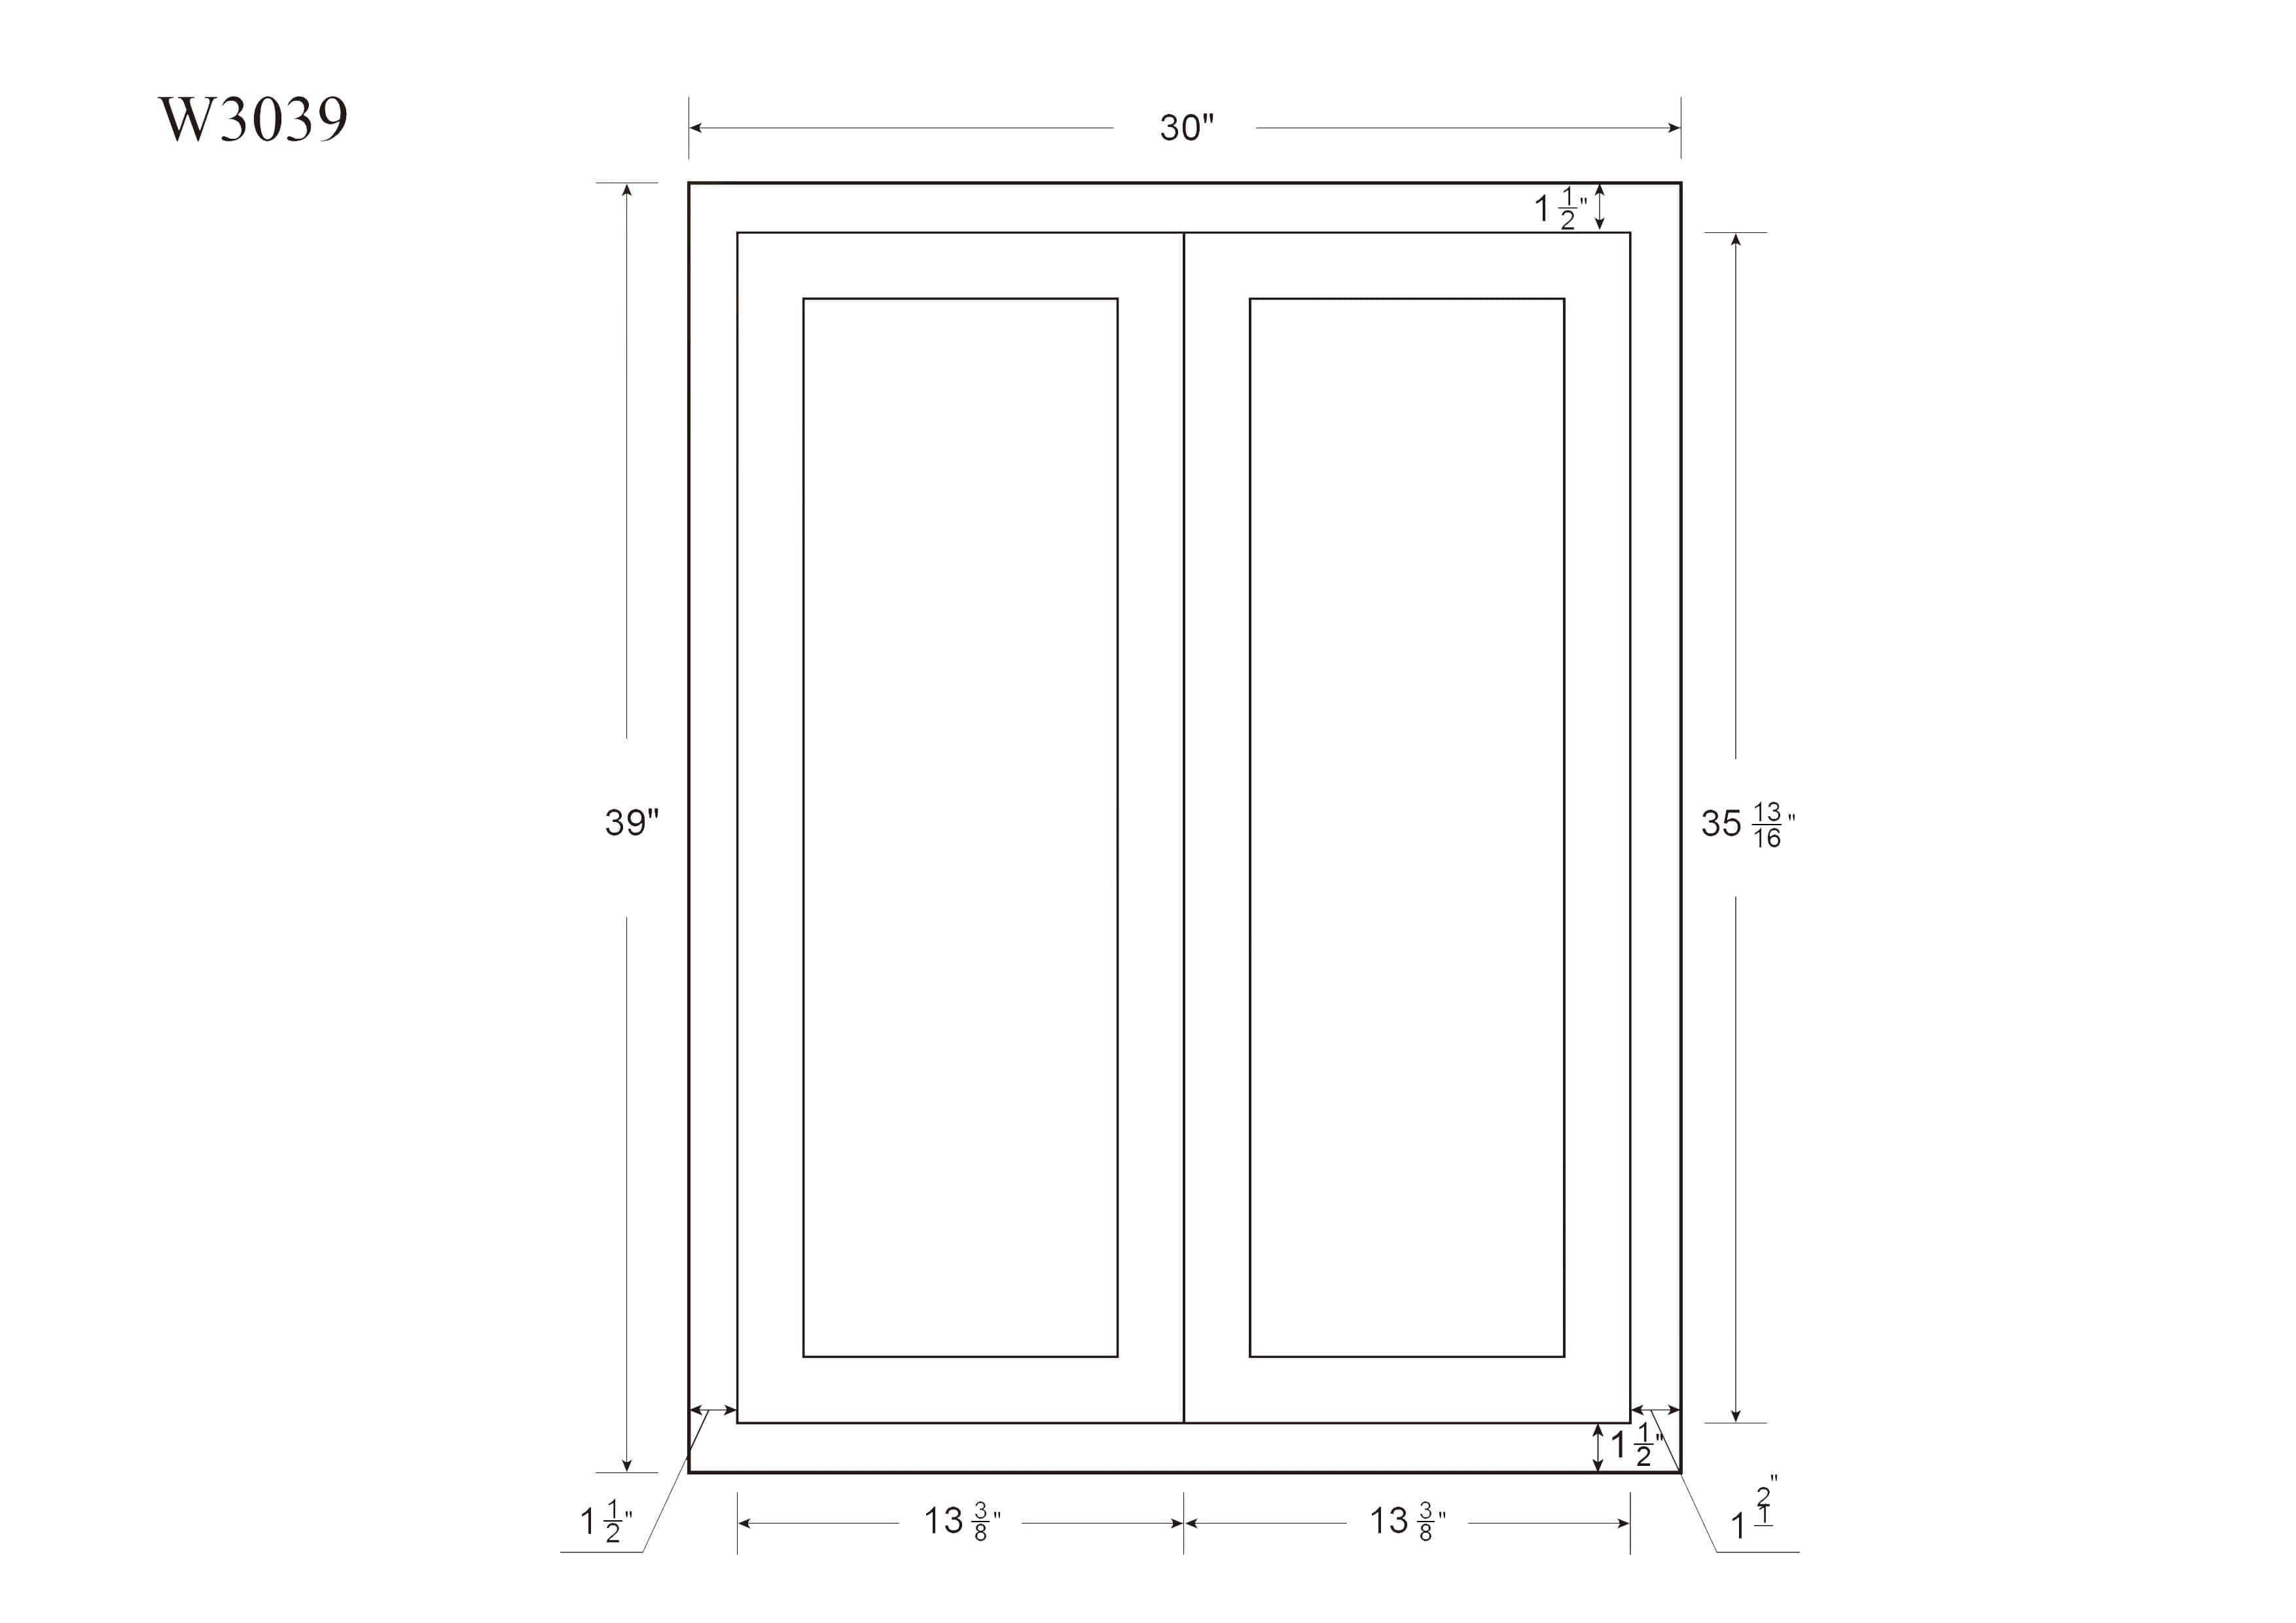 39" Tall Dark Gray Inset Shaker Wall Cabinet - Double Door 24", 27", 30", 33" & 36" Wide